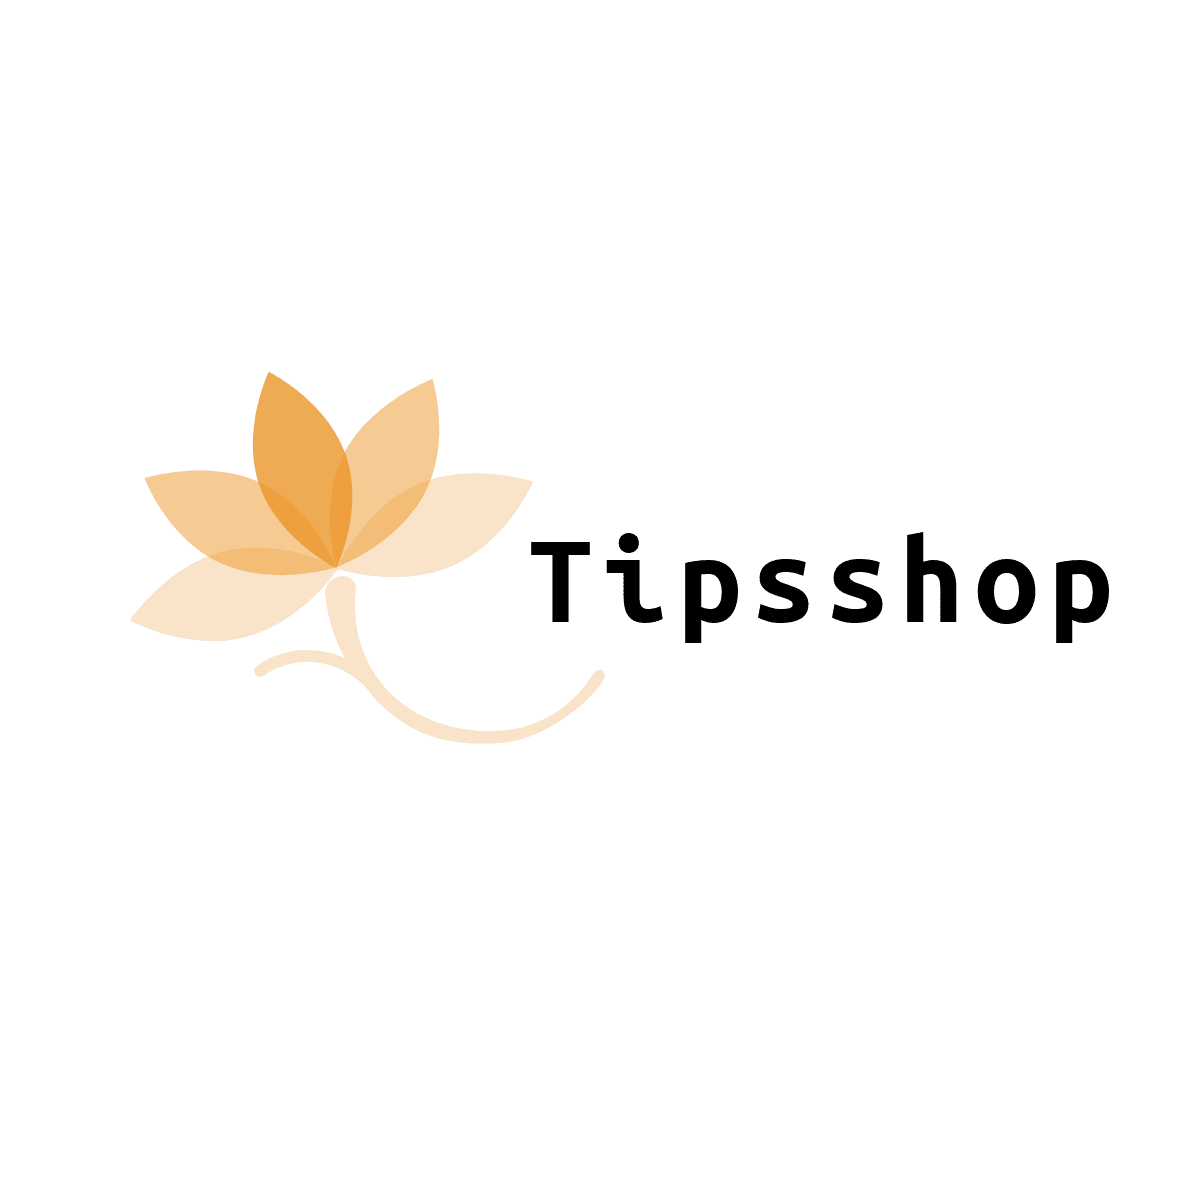 Tipsshop